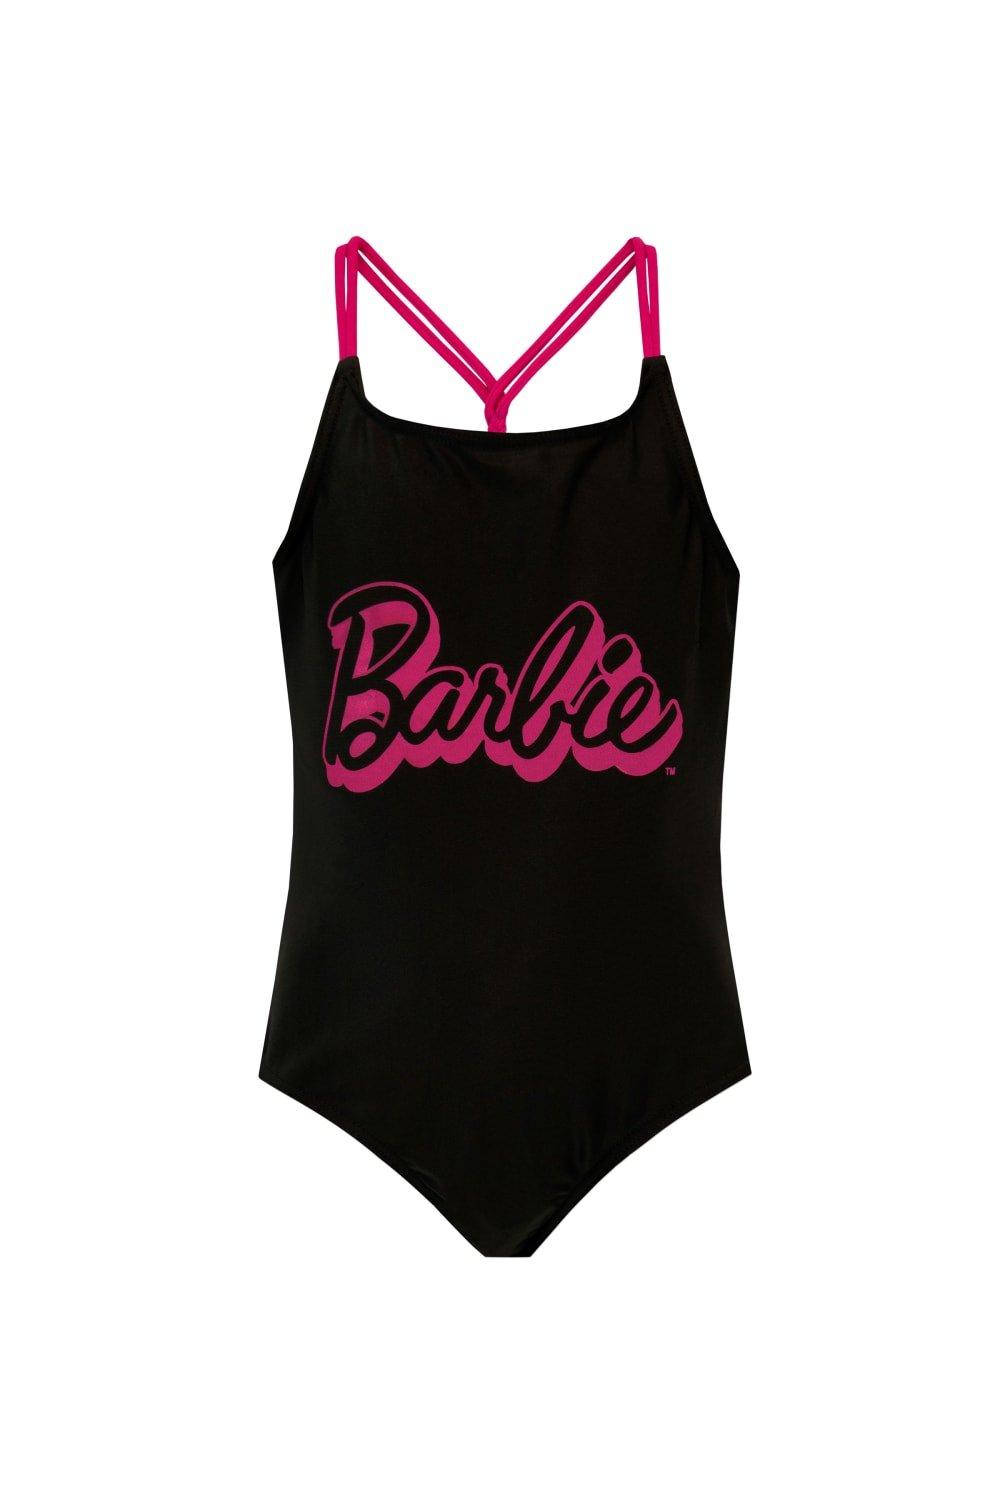 Купальник Цельный купальный костюм Barbie, черный купальник цельный купальный костюм barbie черный